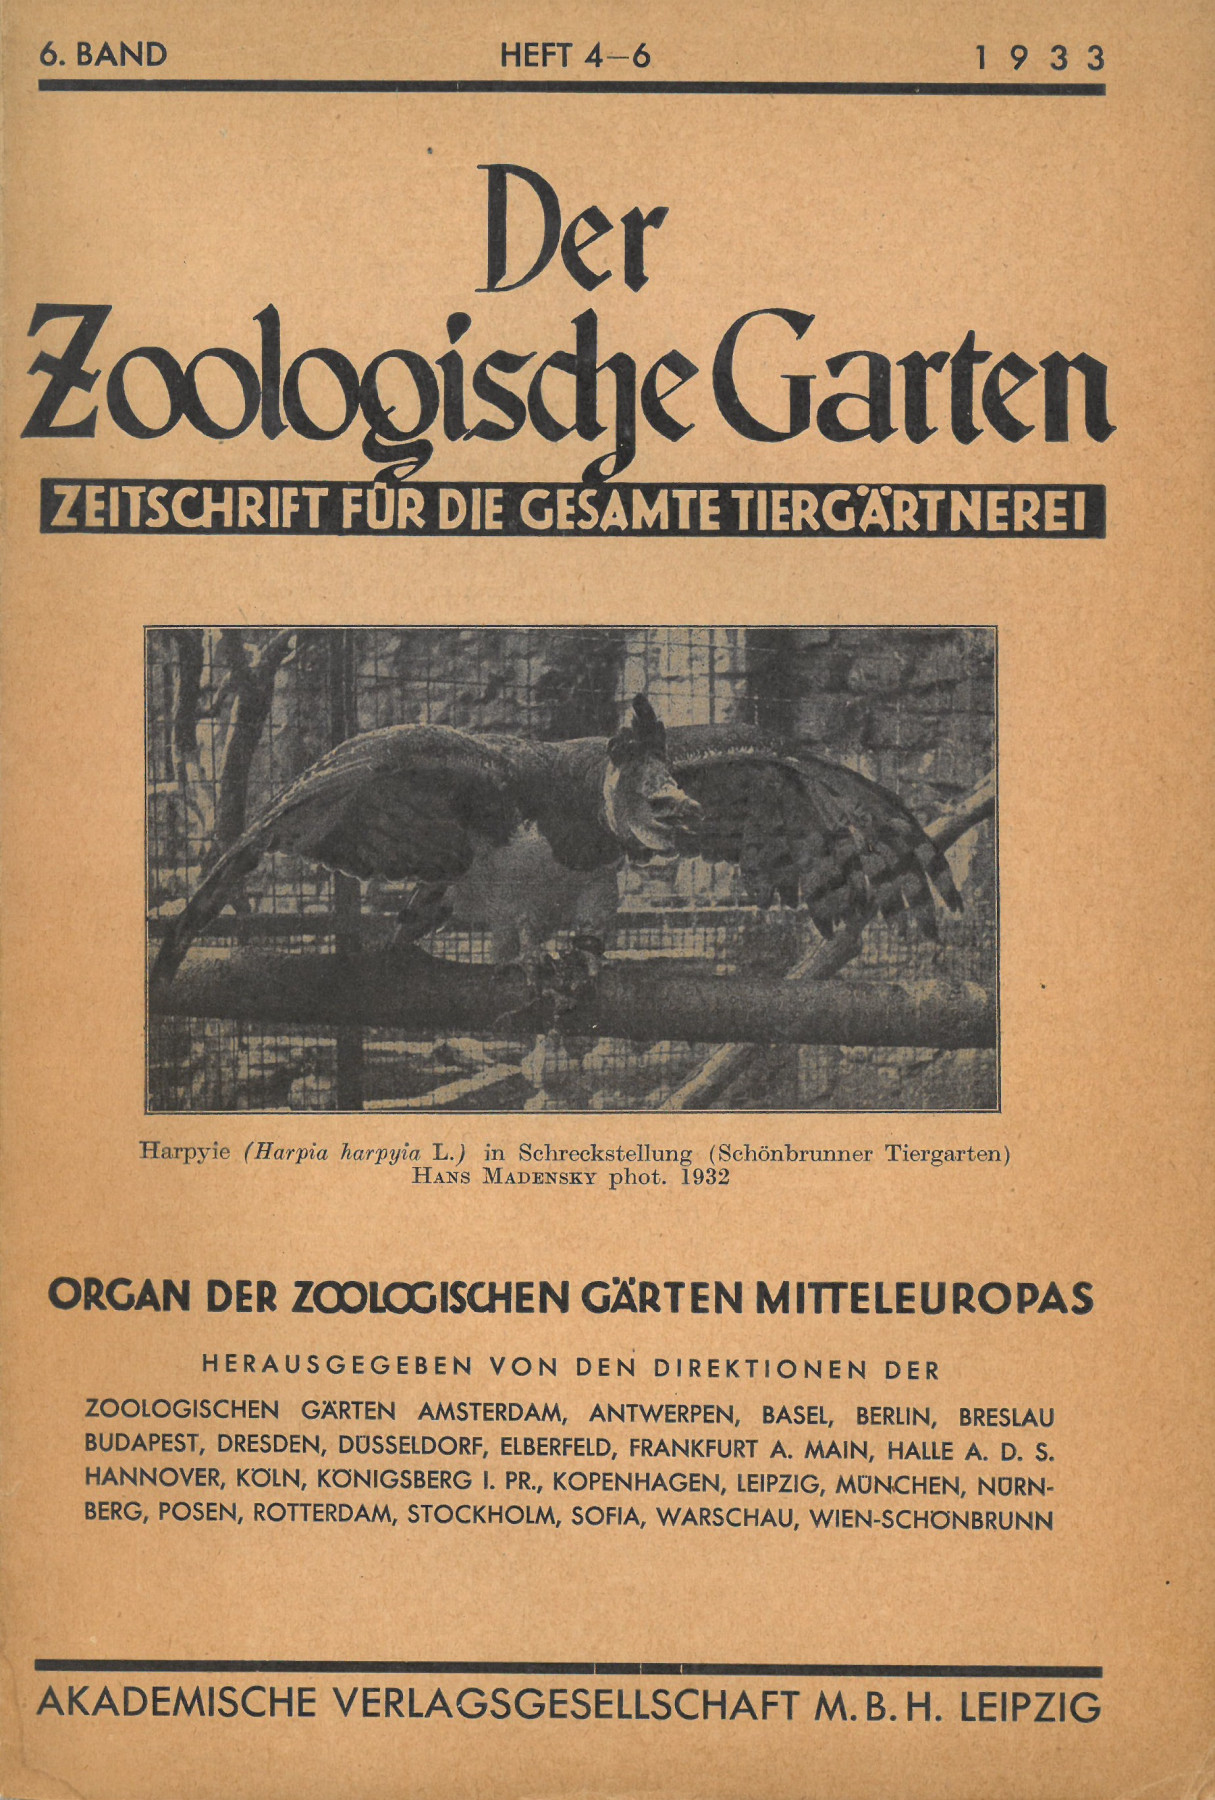 Titelseite von Der Zoologische Garten mit Foto einer Harpyie